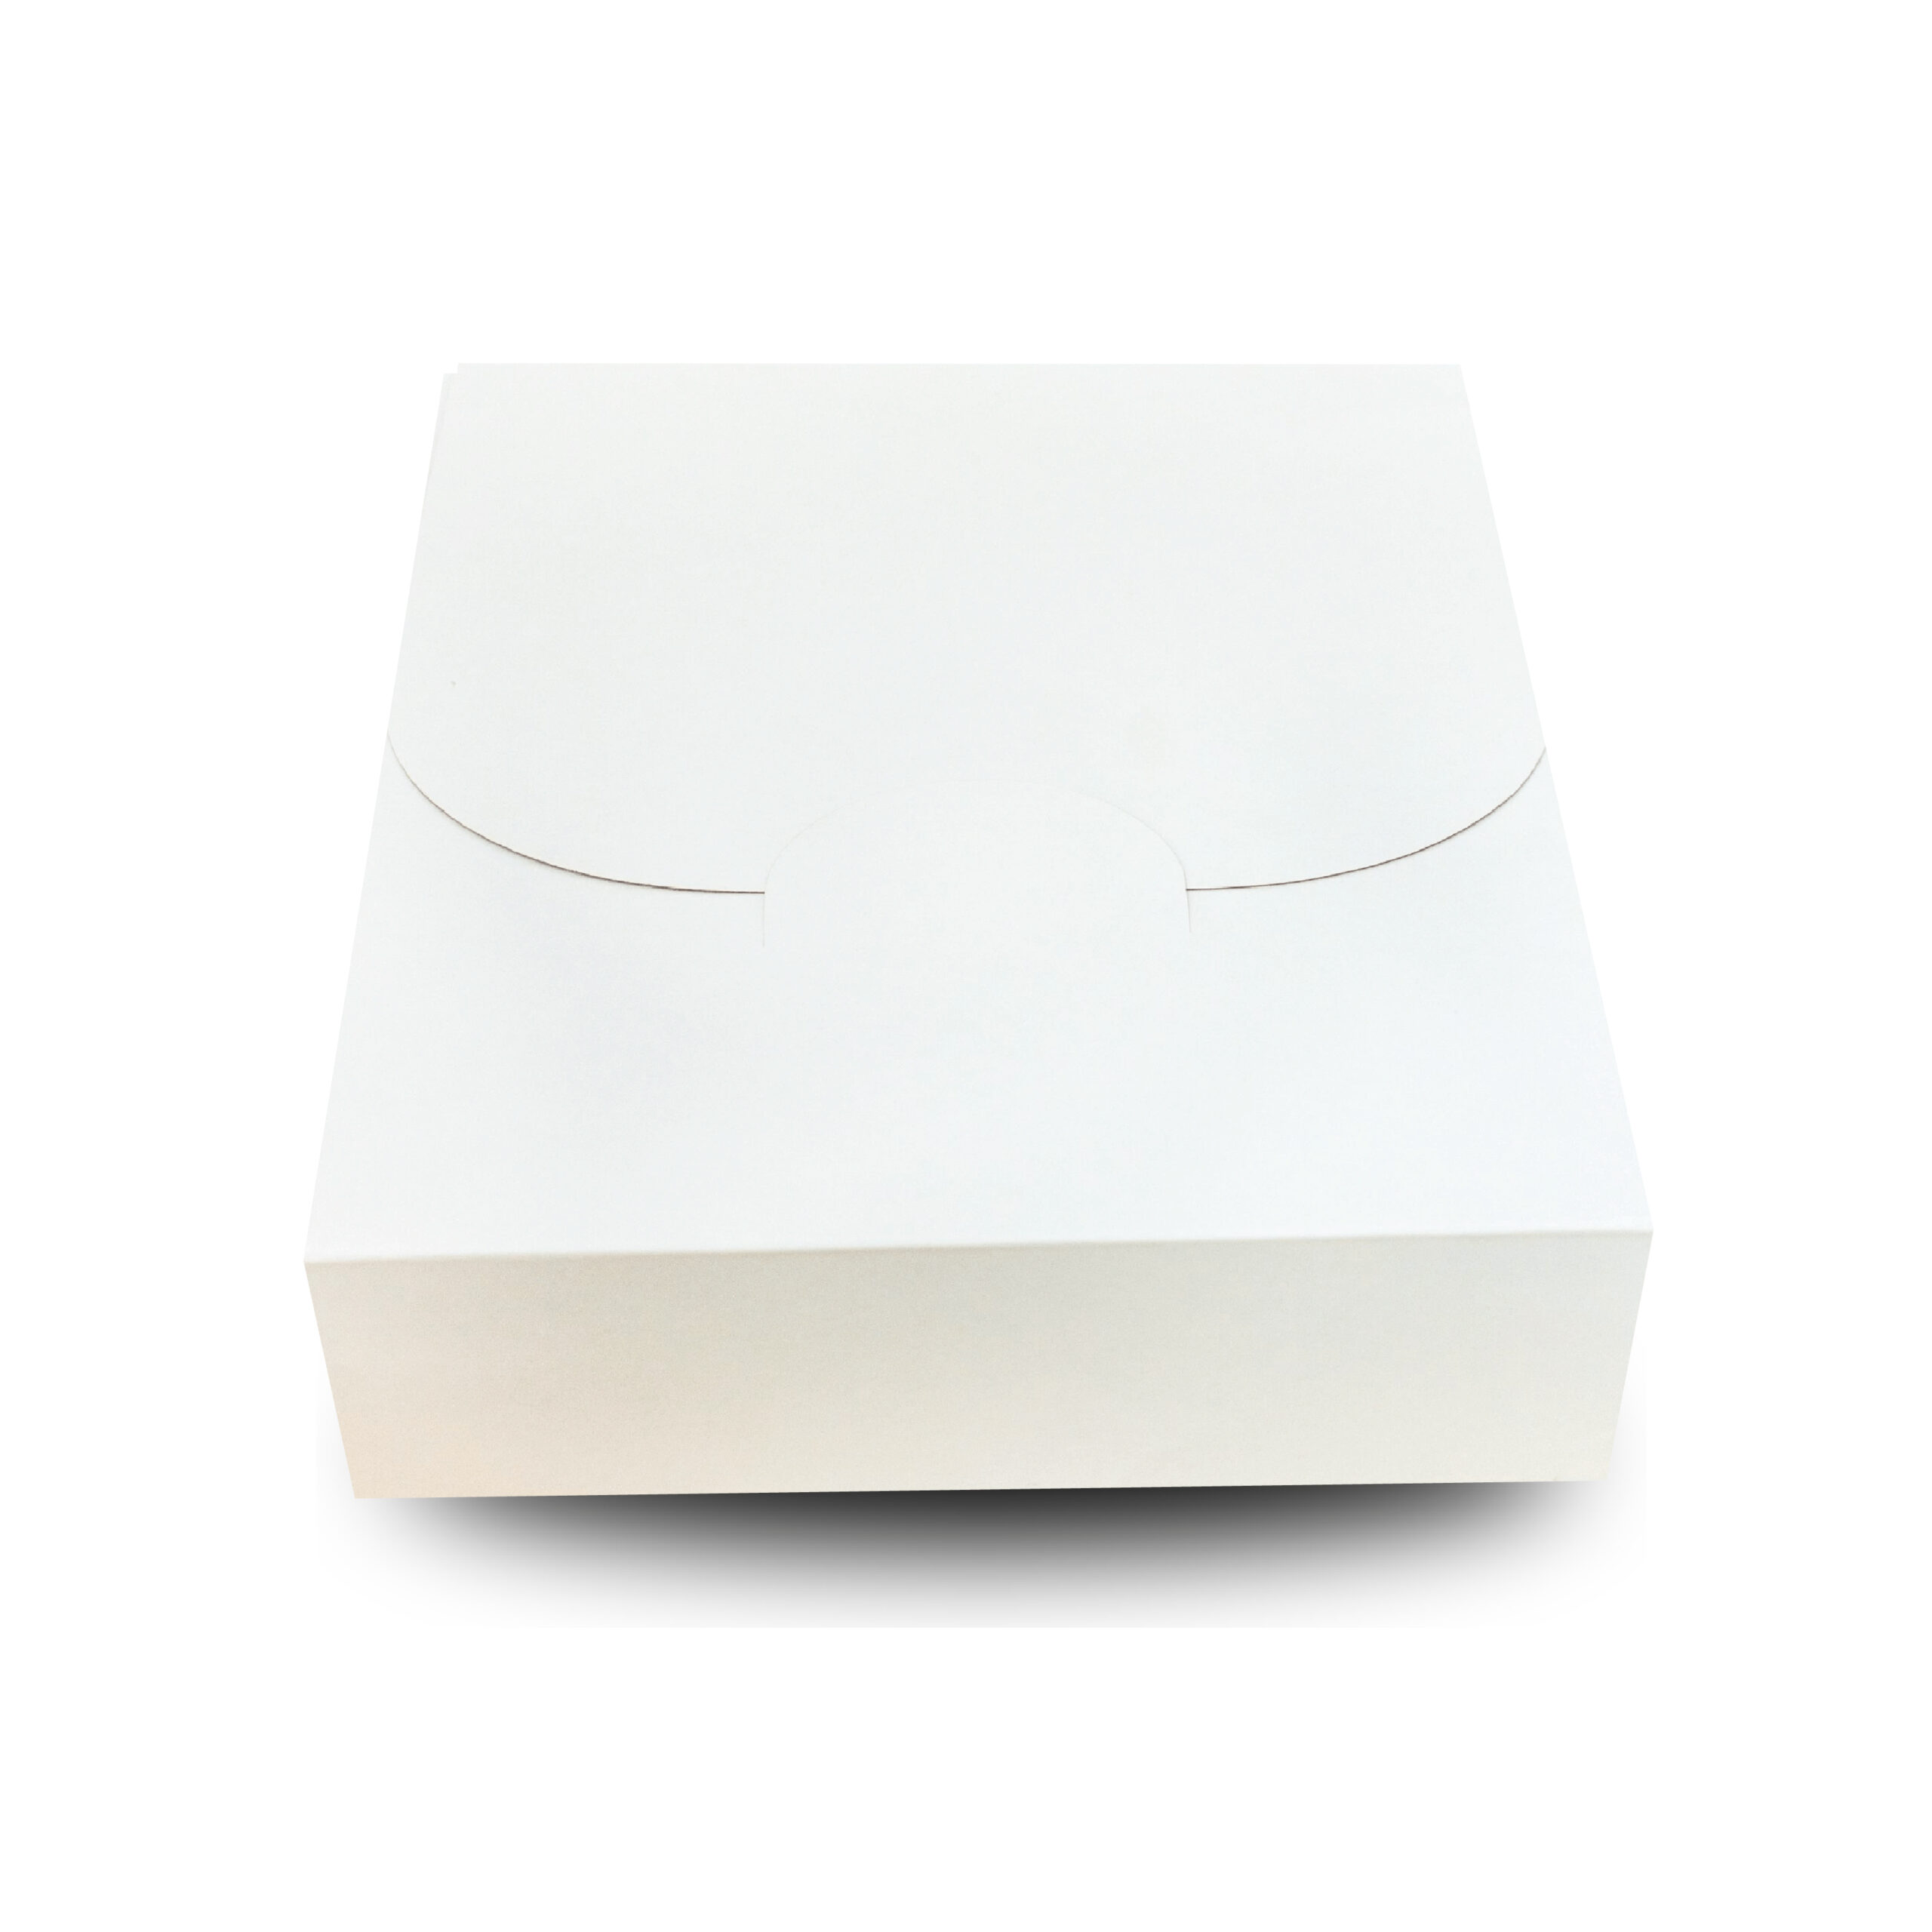 Caja ordenación blanca cierra fácil 36x28x16cm